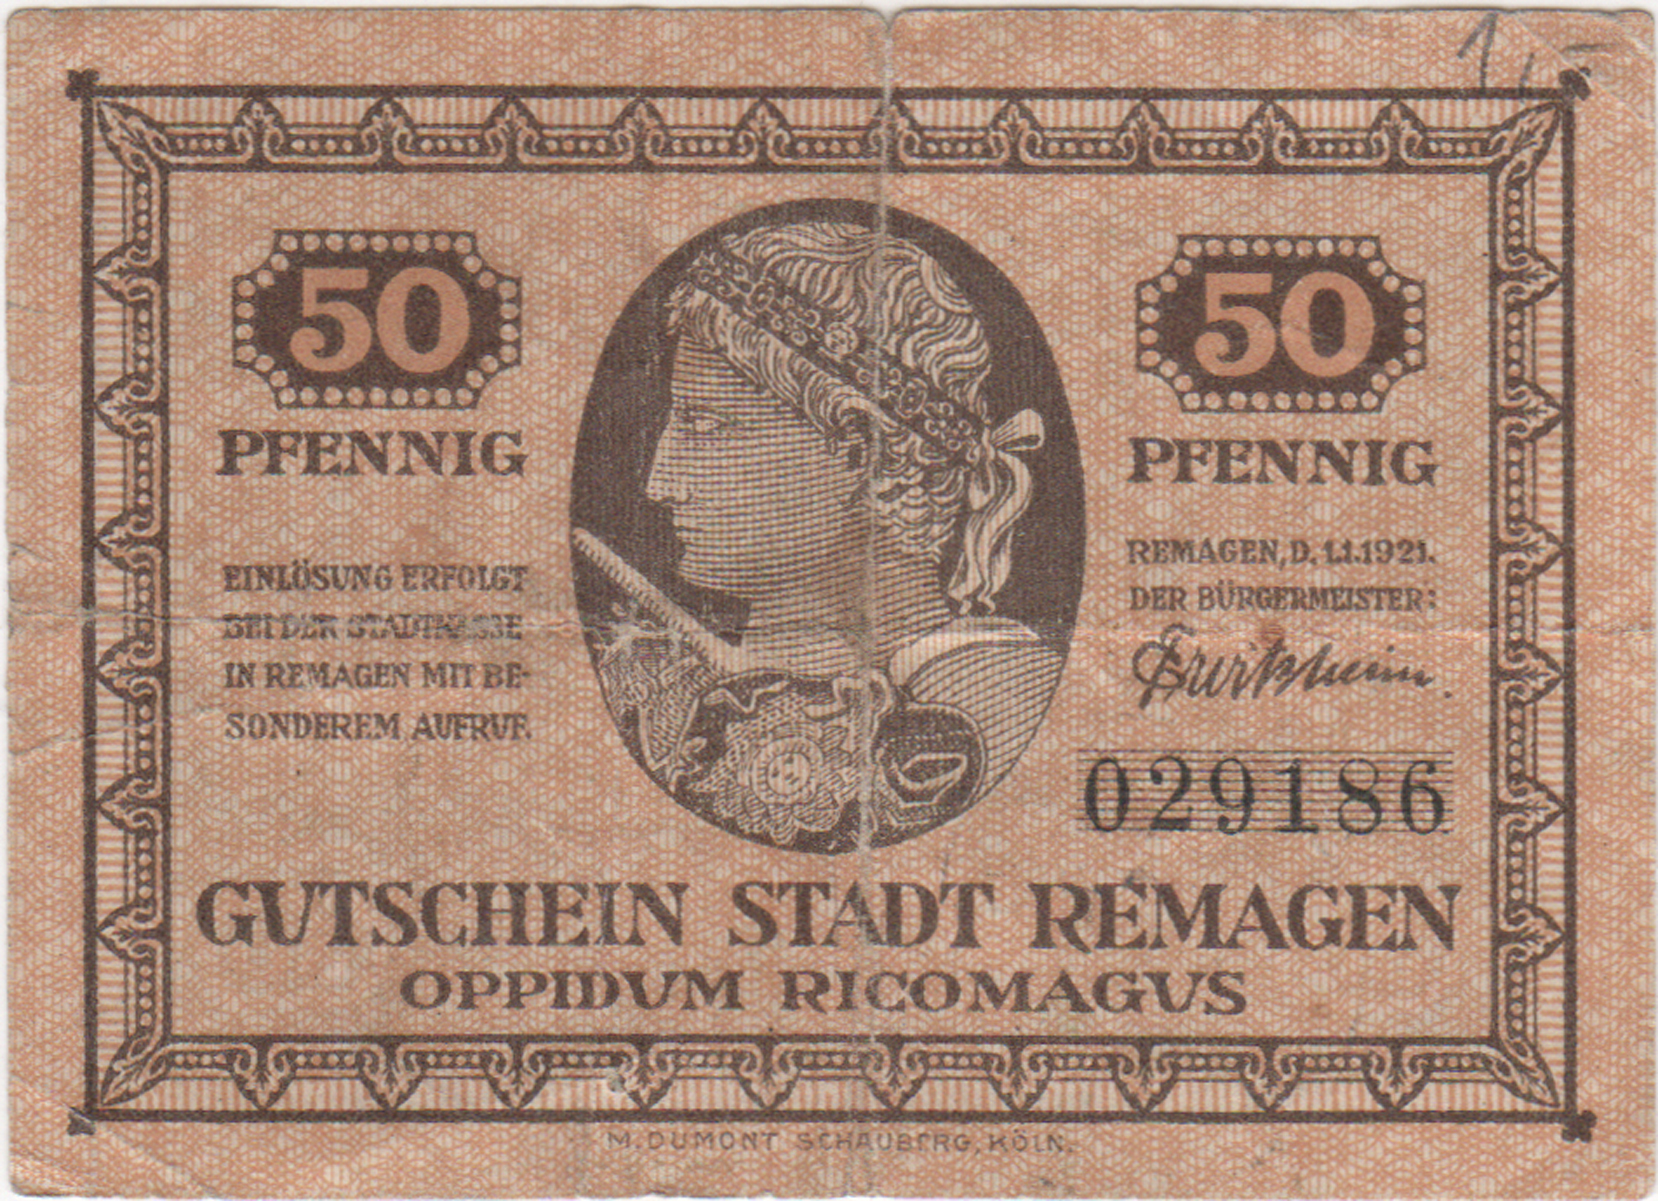 Gutschein der Stadt Remagen über 50 Pfennig vom 01.01.1921 (Heimatmuseum und -Archiv Bad Bodendorf CC BY-NC-SA)